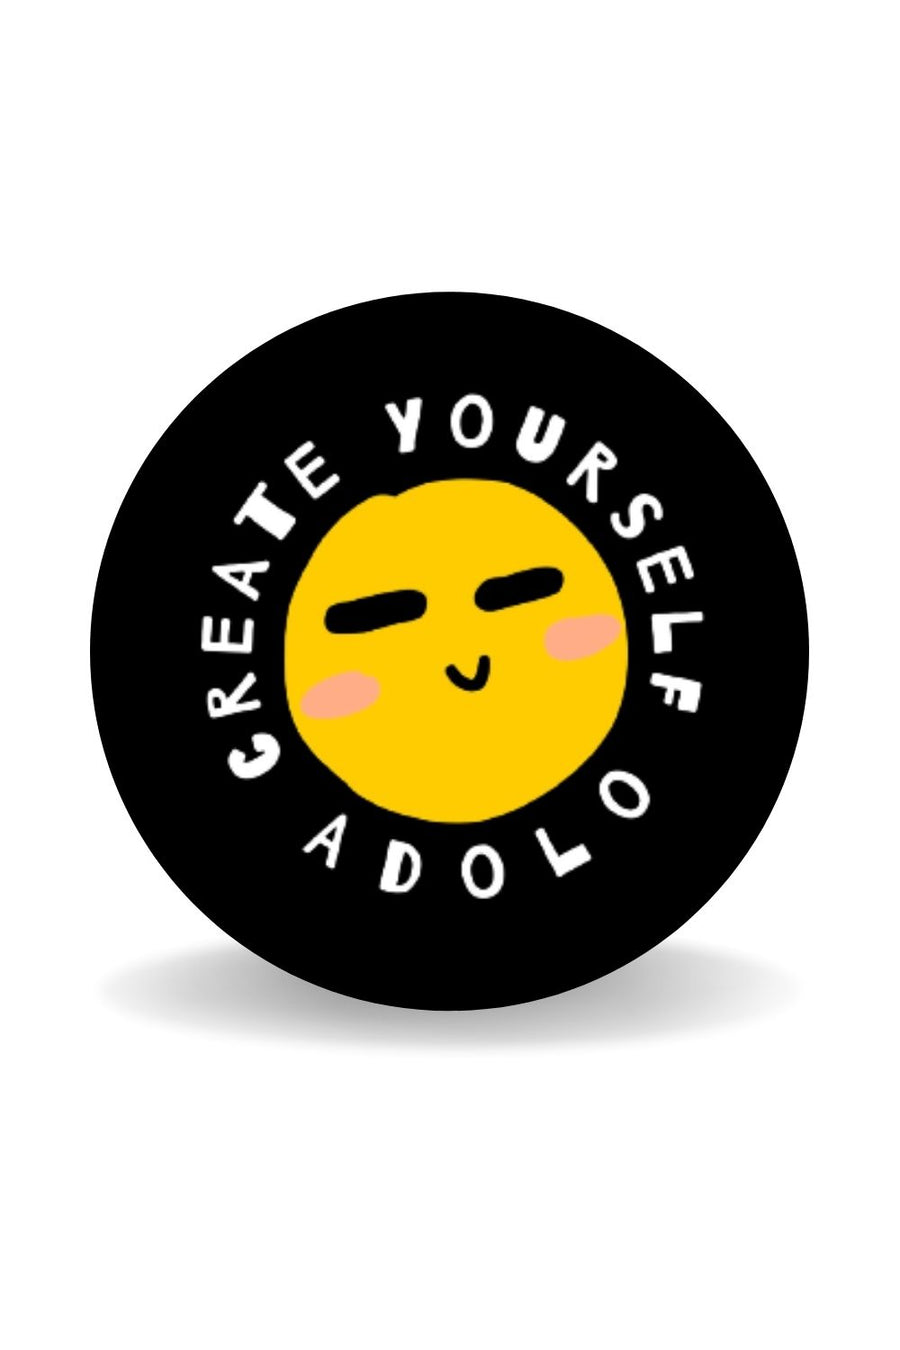 Sticker adesivo Create yourself adolo nero e giallo.